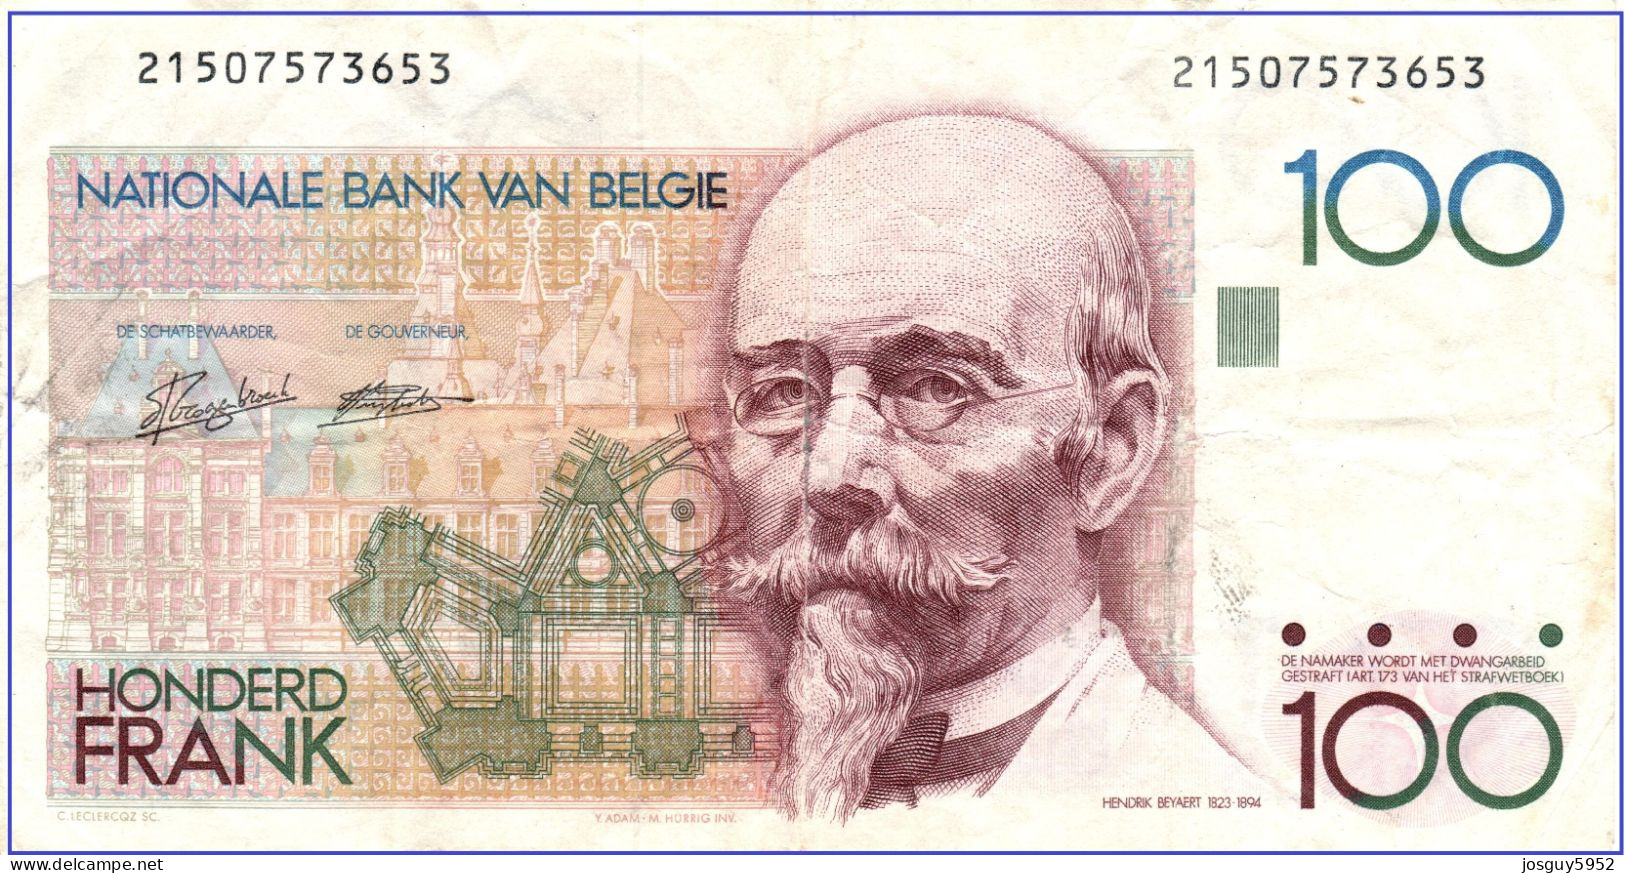 BELGIE - 100 FRANK - 1978 - 1981 - Nr 21507573653 - HENDRIK REYAERT - 100 Francos